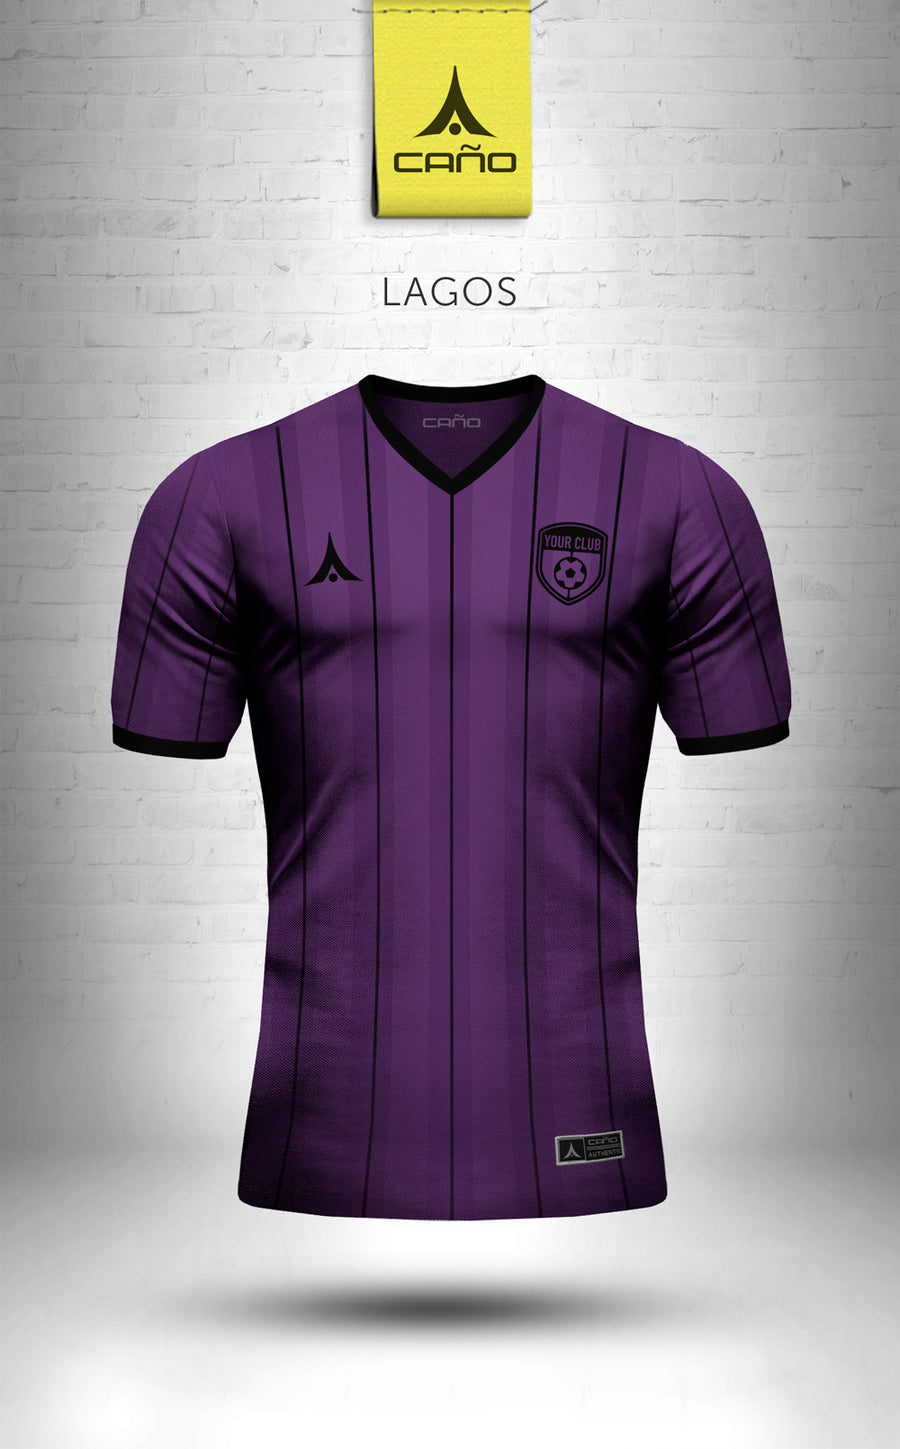 Lagos in purple/black